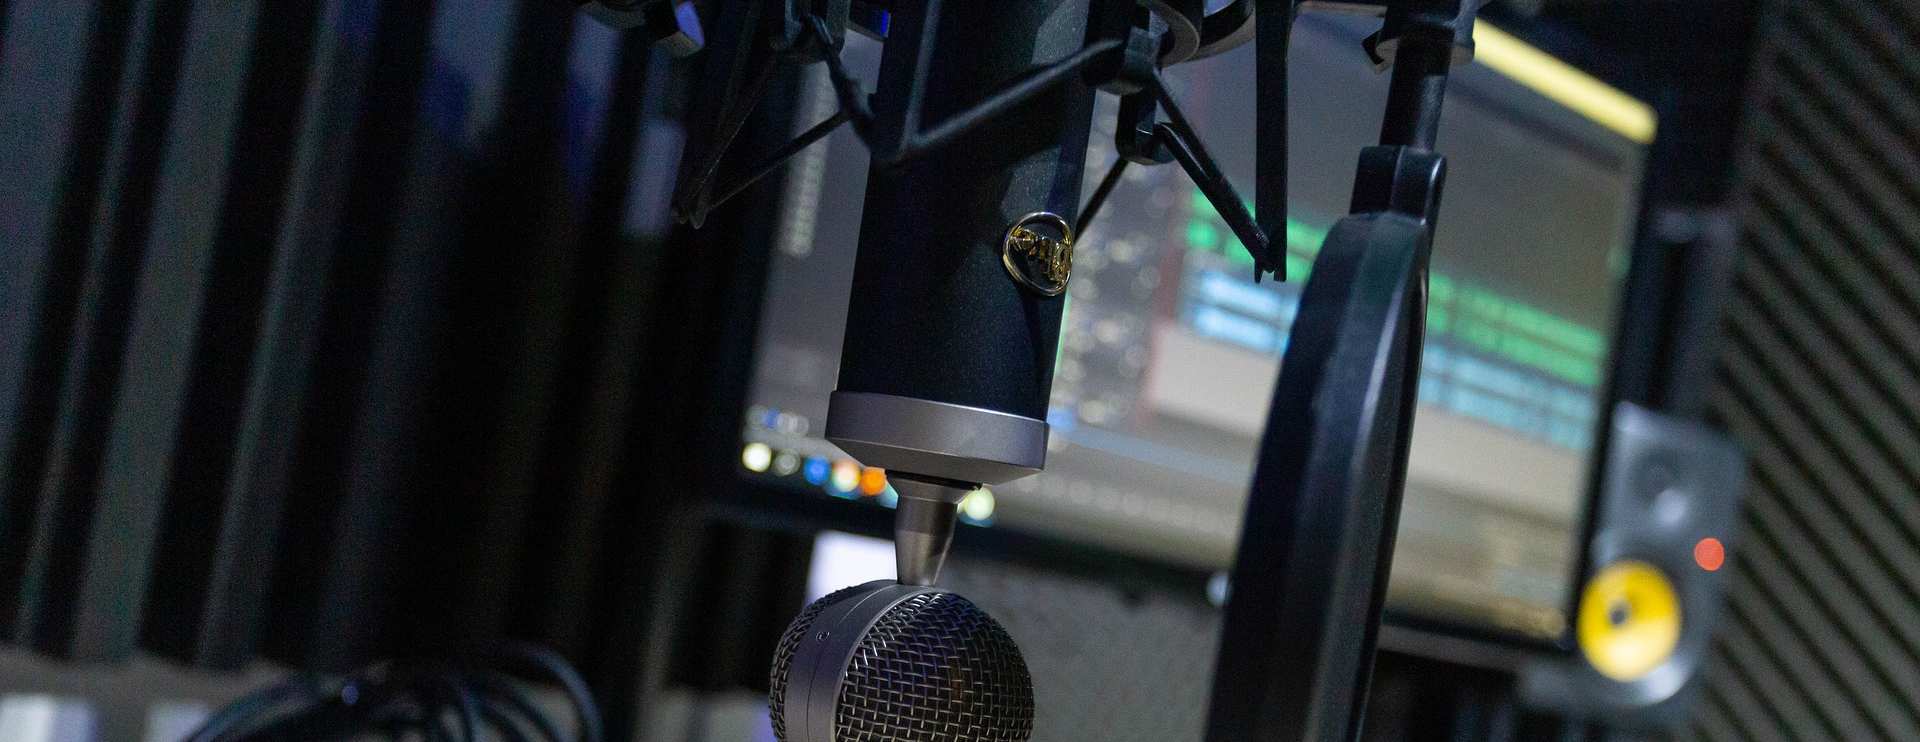 Mitmachen bei kt-radio, Einblick in ein Studio mit Mikrofon und Tonbearbeitsungsprogramm im Hintergrund